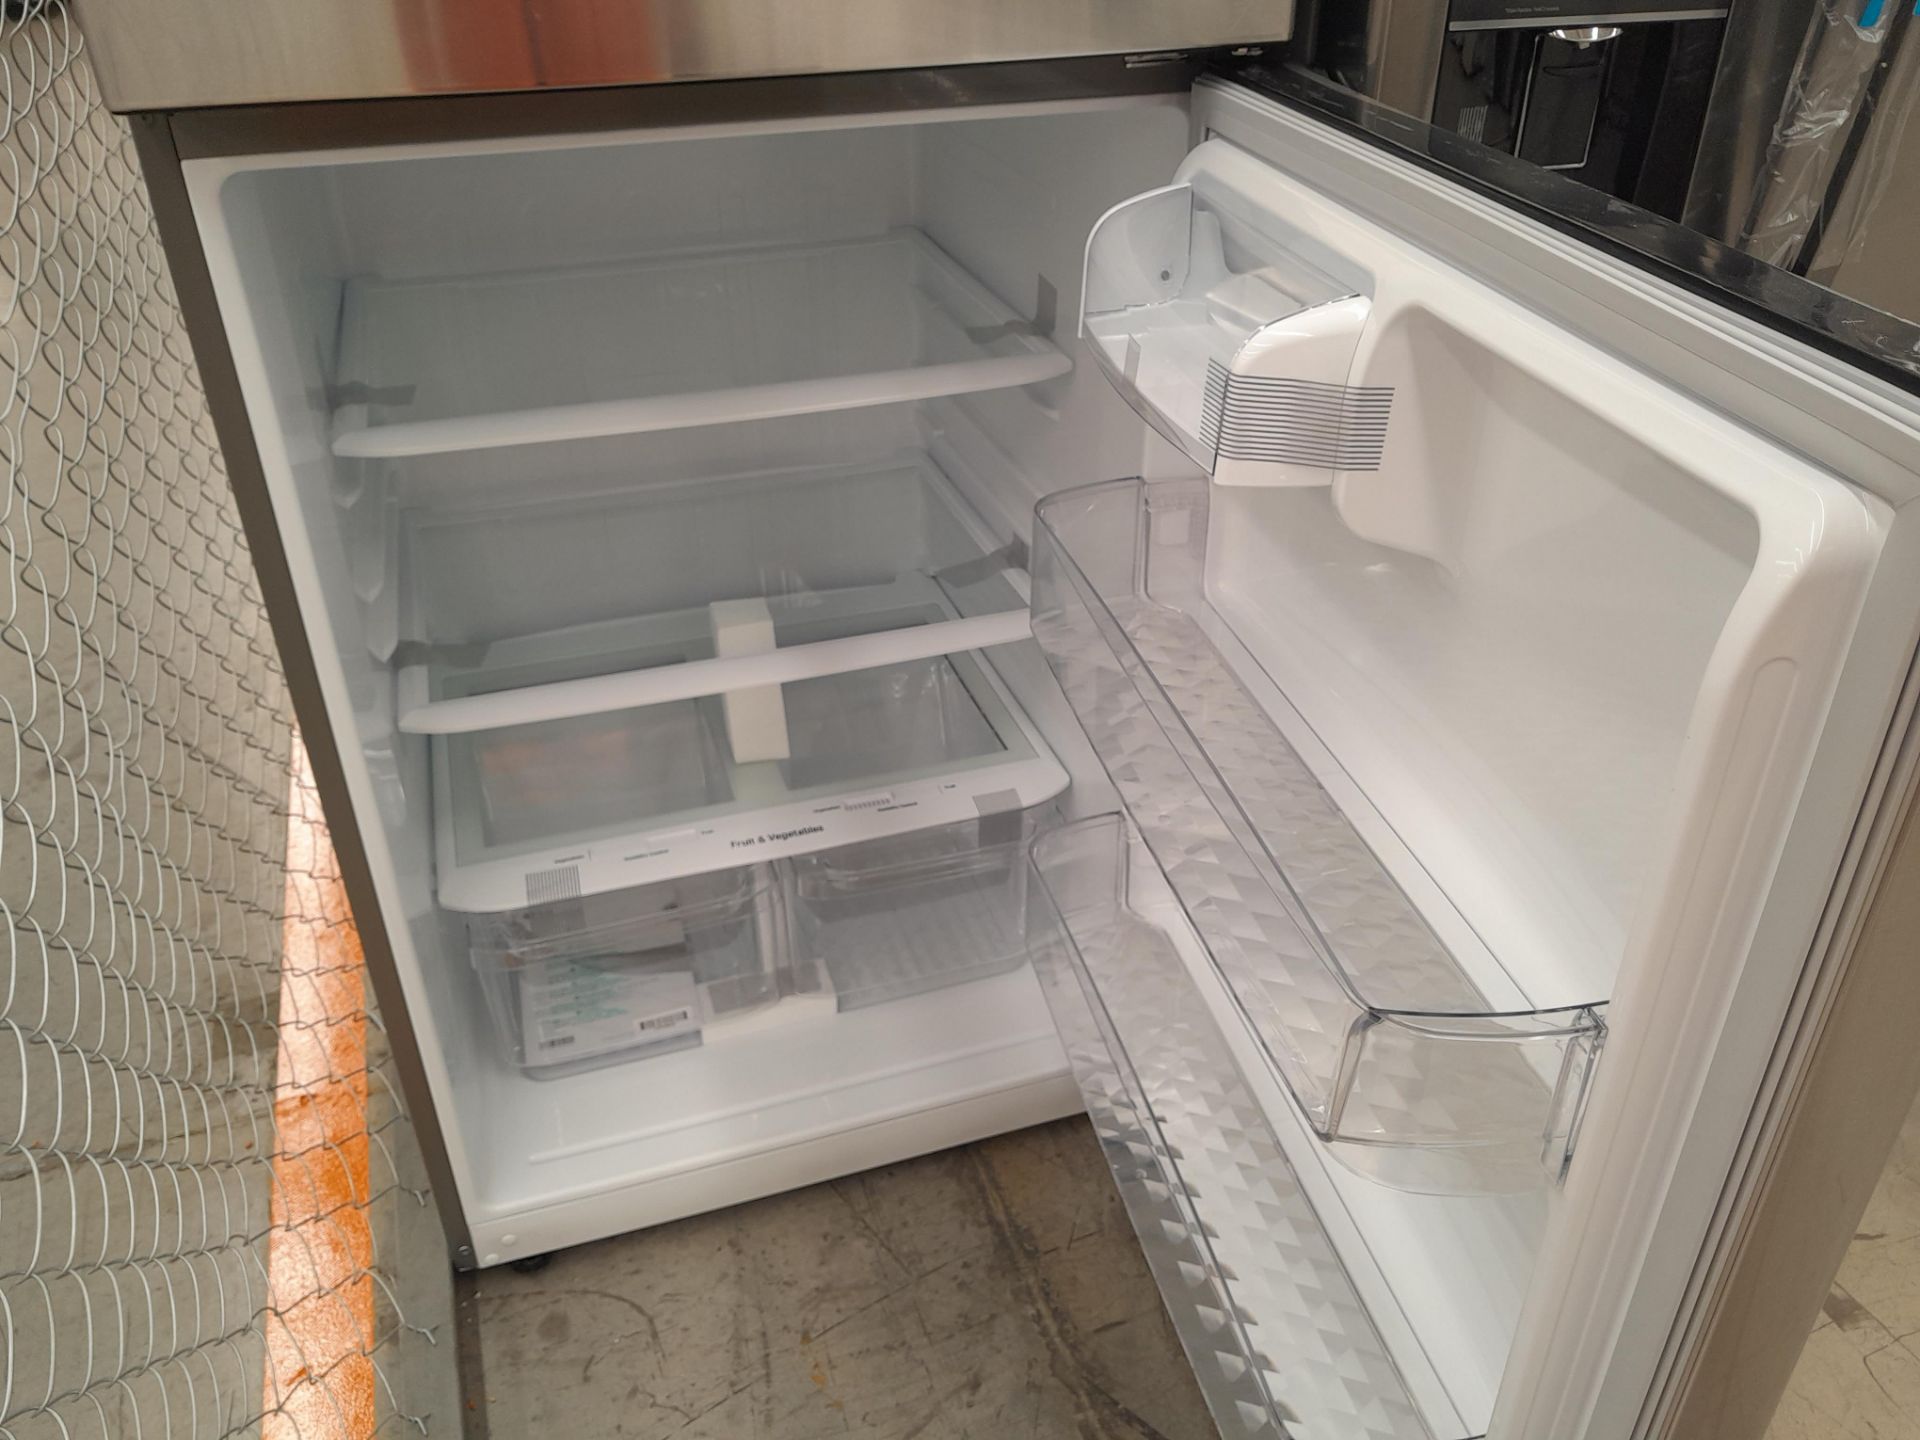 (NUEVO) Lote de 1 Refrigerador Marca LG, Modelo LT57BPSX, Serie F30468, Color GRIS - Image 3 of 5